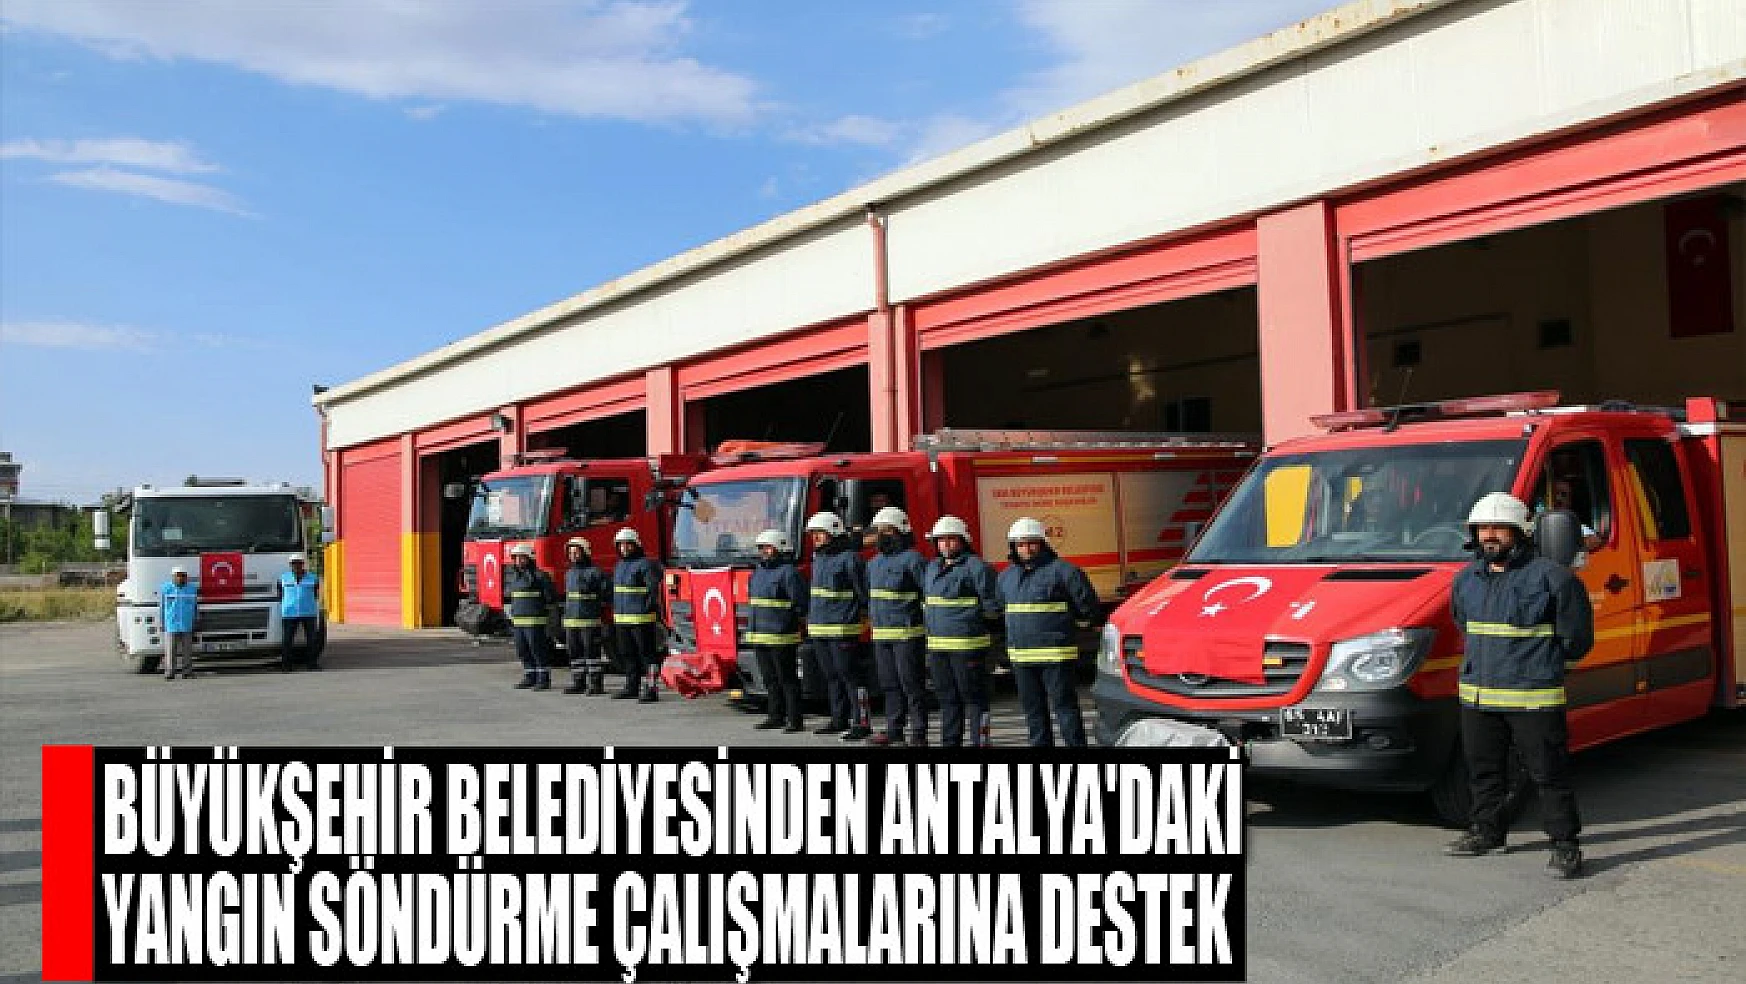 Büyükşehir Belediyesinden Antalya'daki yangın söndürme çalışmalarına destek